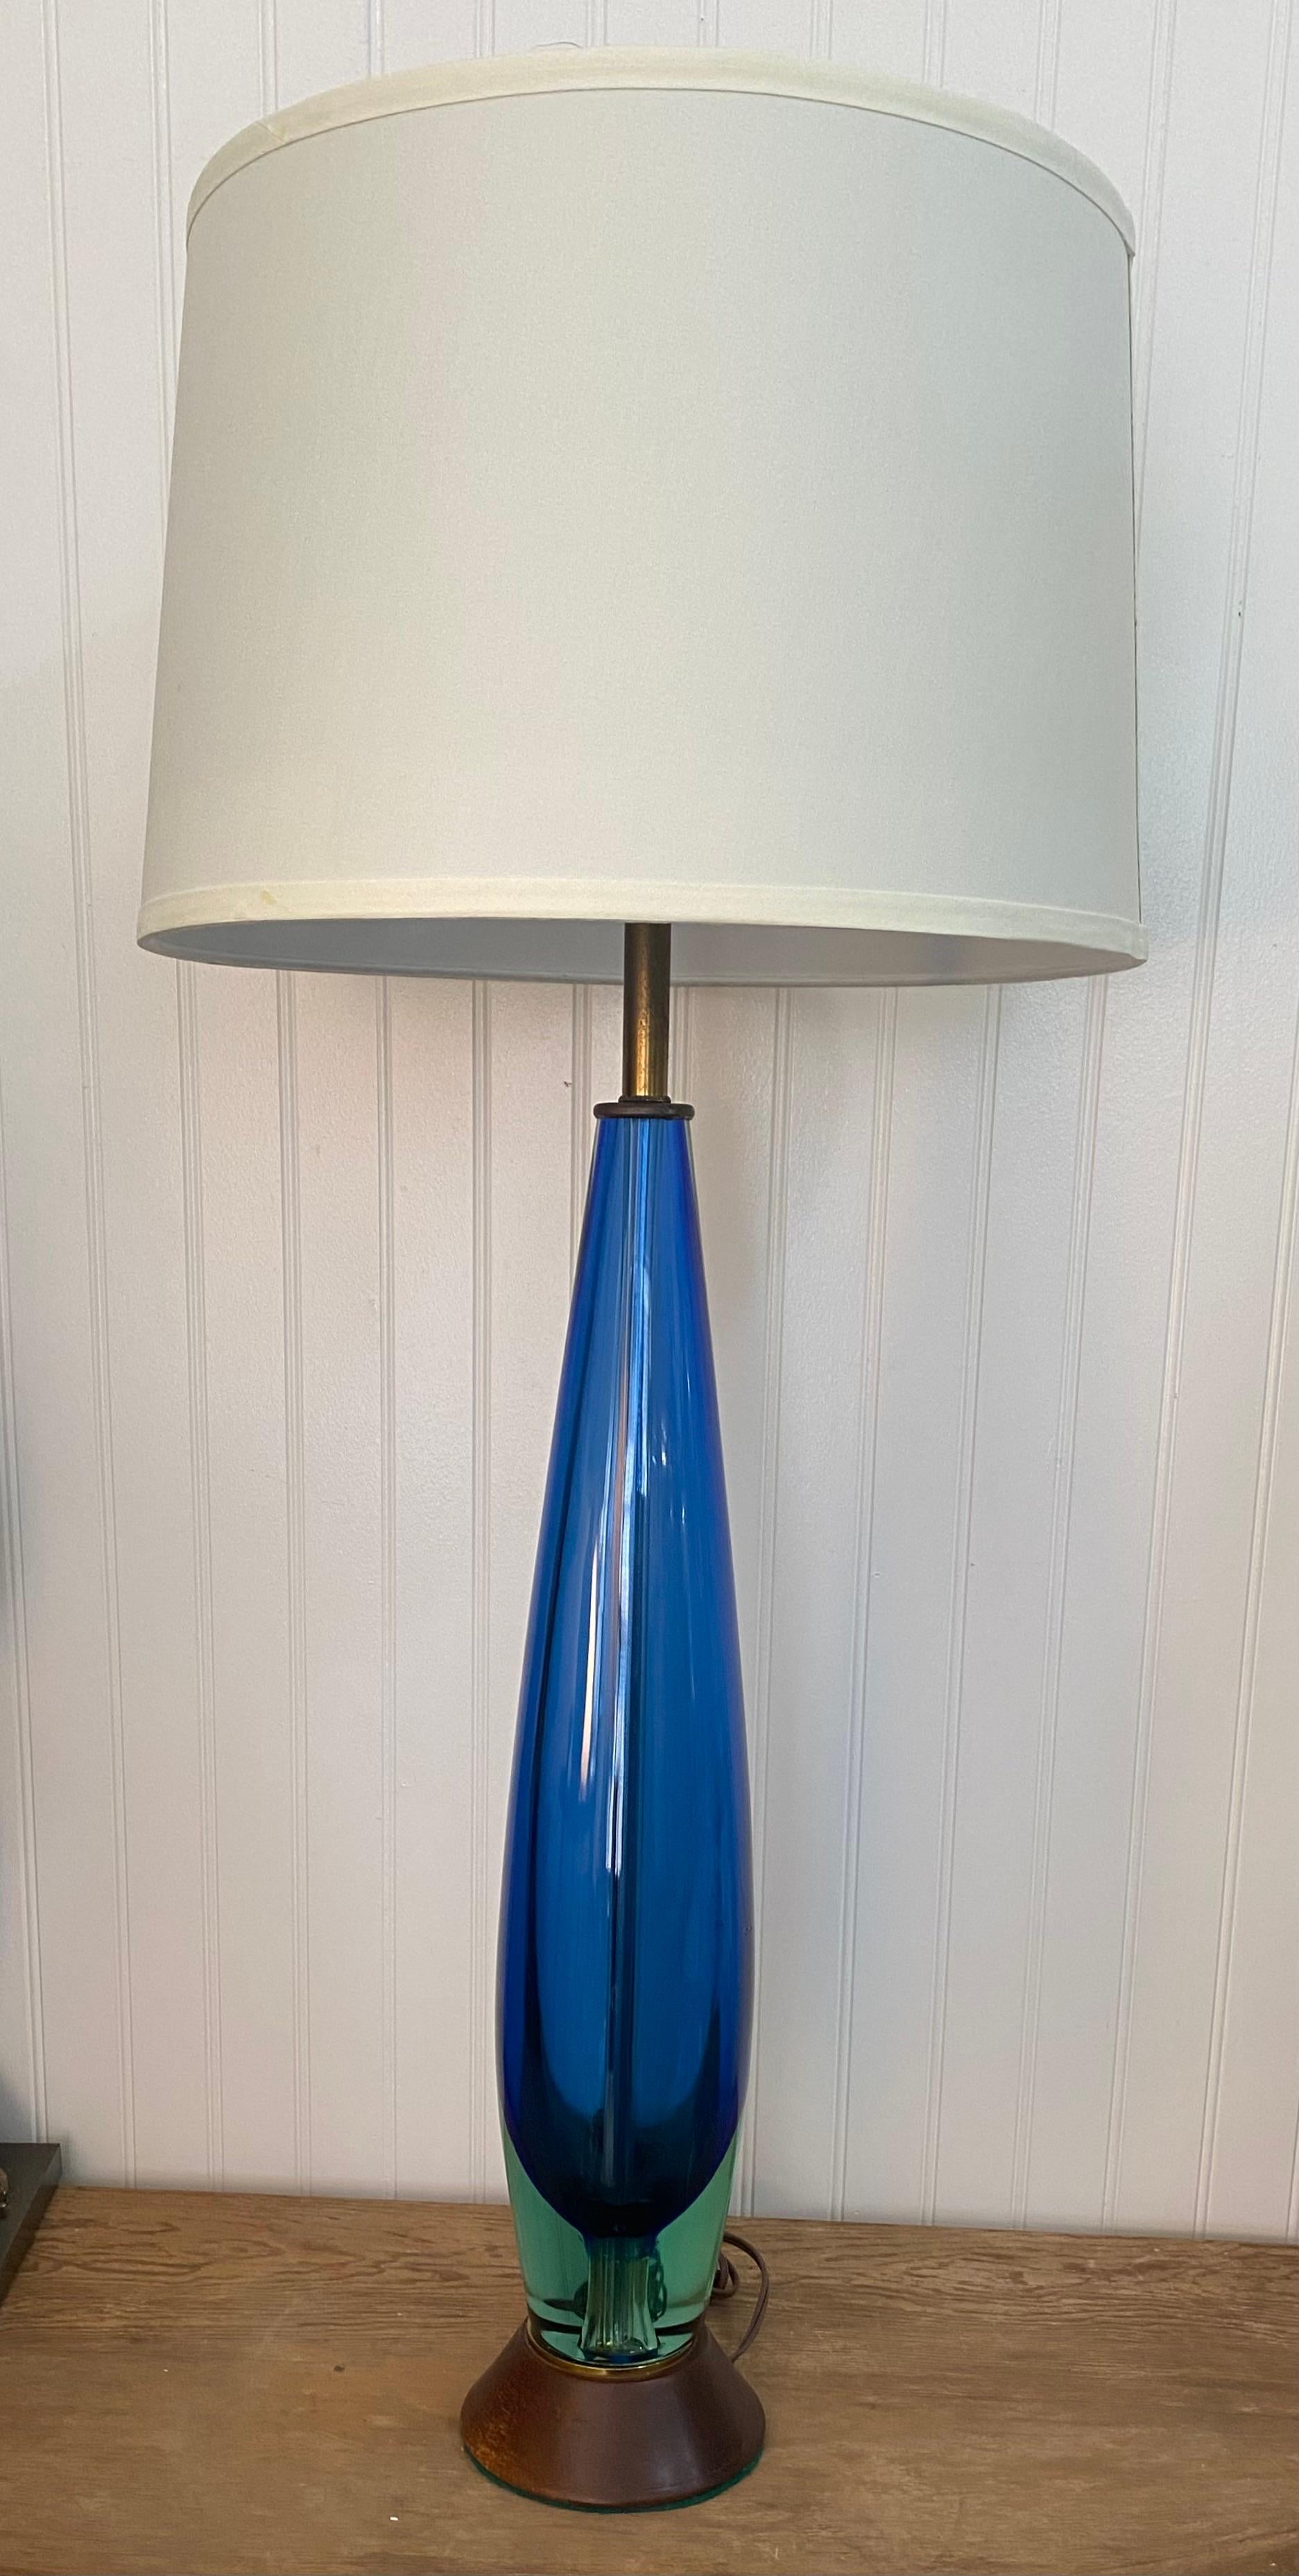 Ein fantastisches Paar bauchiger Tischlampen, entworfen von Flavio Poli und hergestellt von Seguso, Murano. Schöne Sommerso-Technik mit grün - blau - klaren Glasschichten.  

Die Höhe bis zur Oberkante des Glases beträgt 24 Zoll plus 6,5 Zoll bis